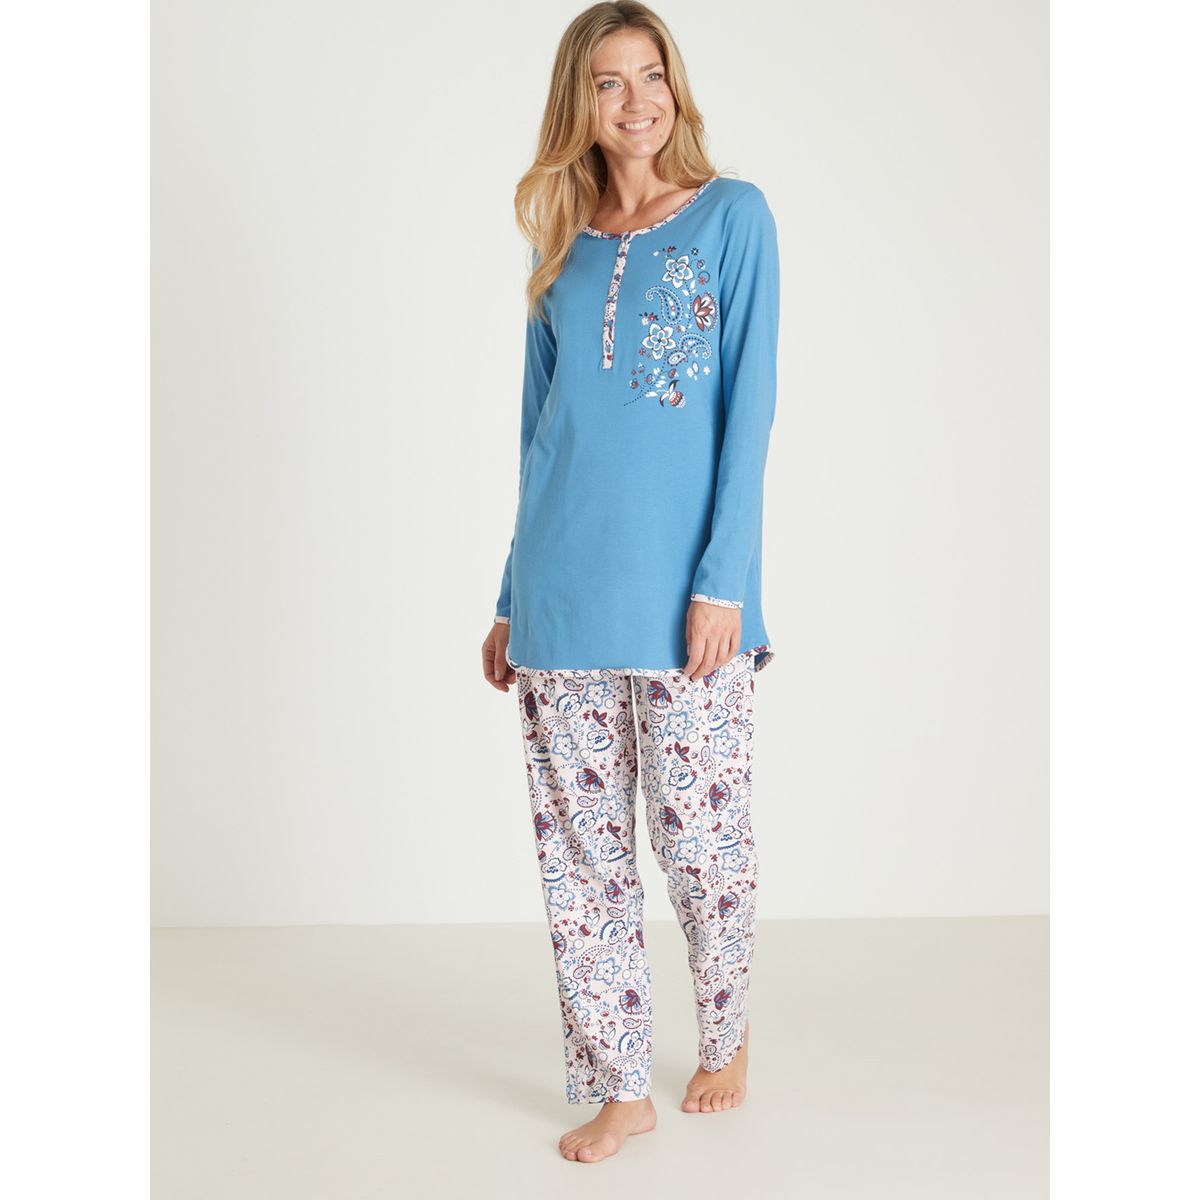 Pyjama manches longues en maille velours - Daxon - Femme